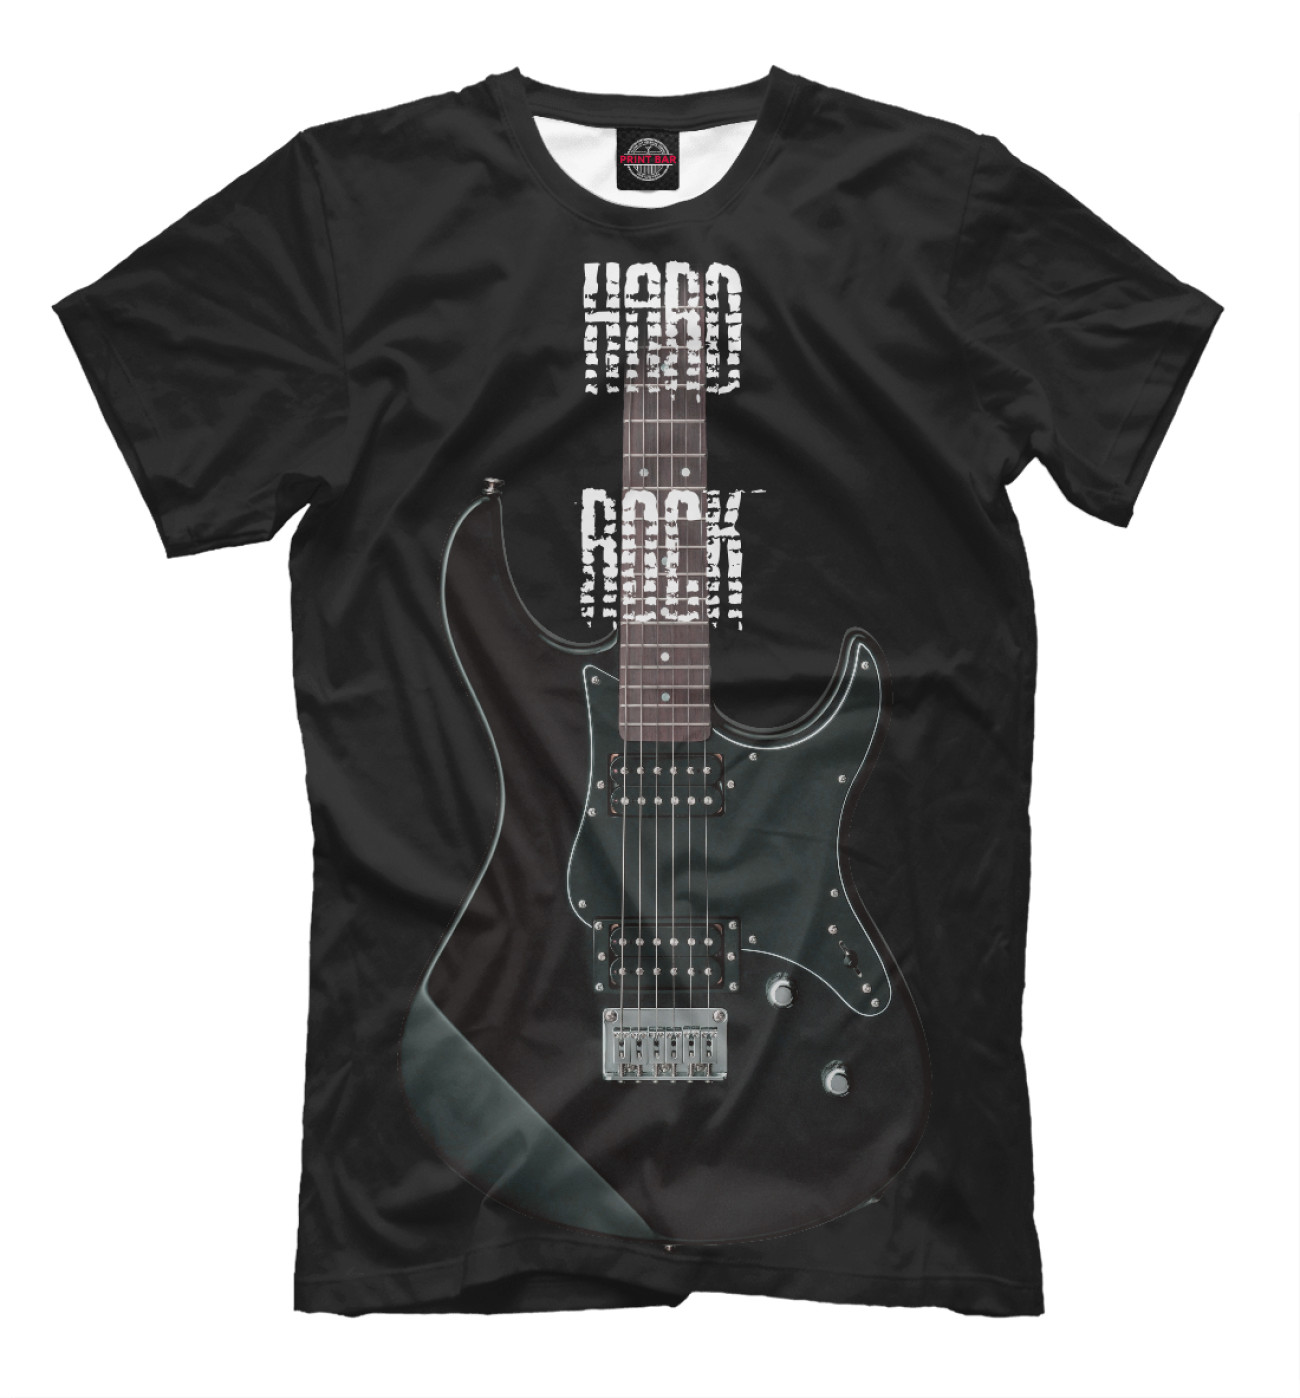 Мужская Футболка Hard Rock гитара, артикул: MZK-961620-fut-2